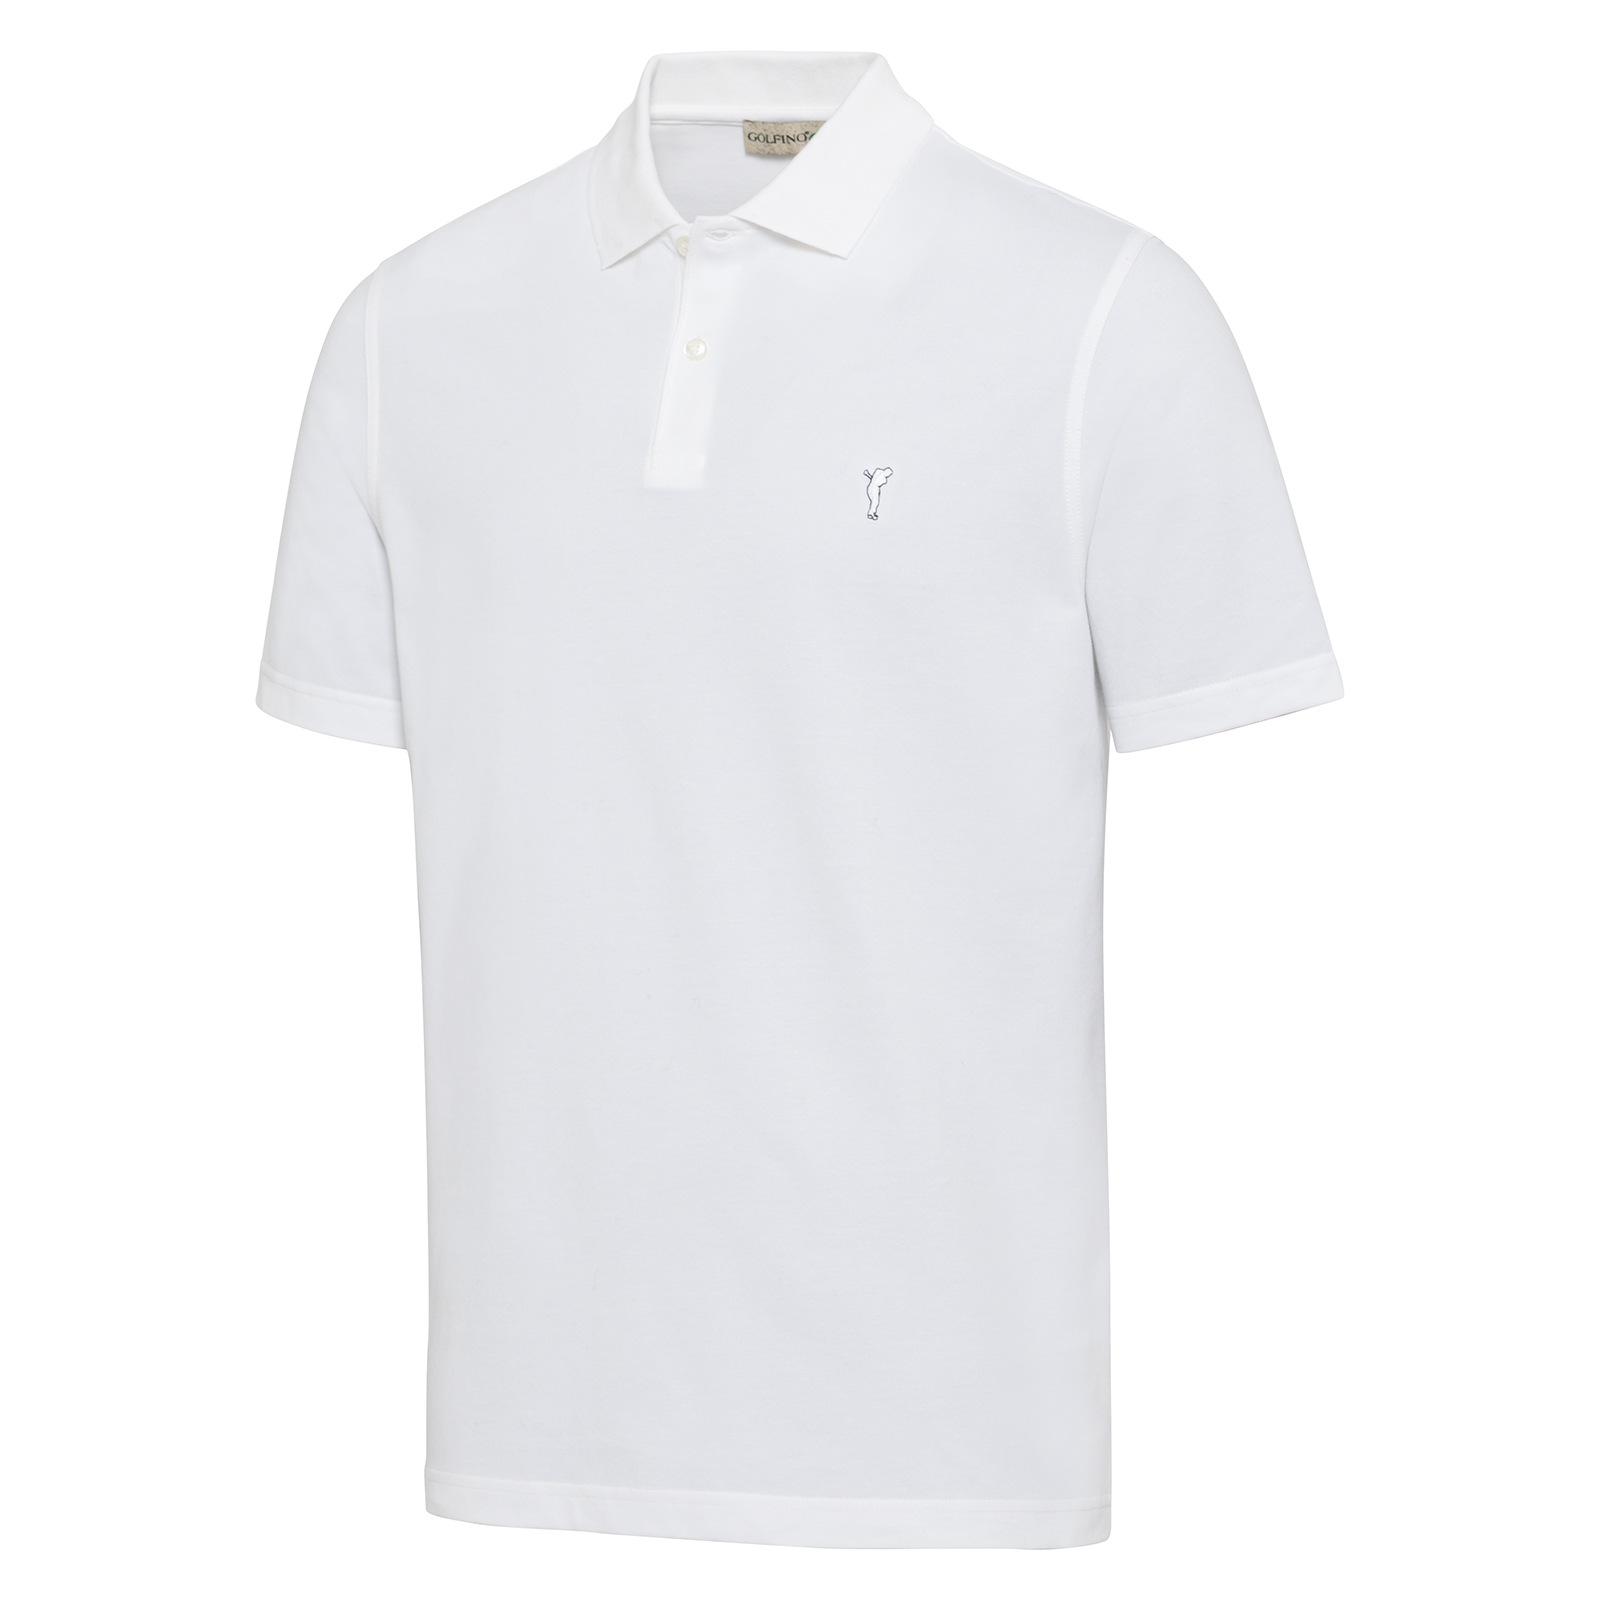 Men's lightweight golf polo shirt